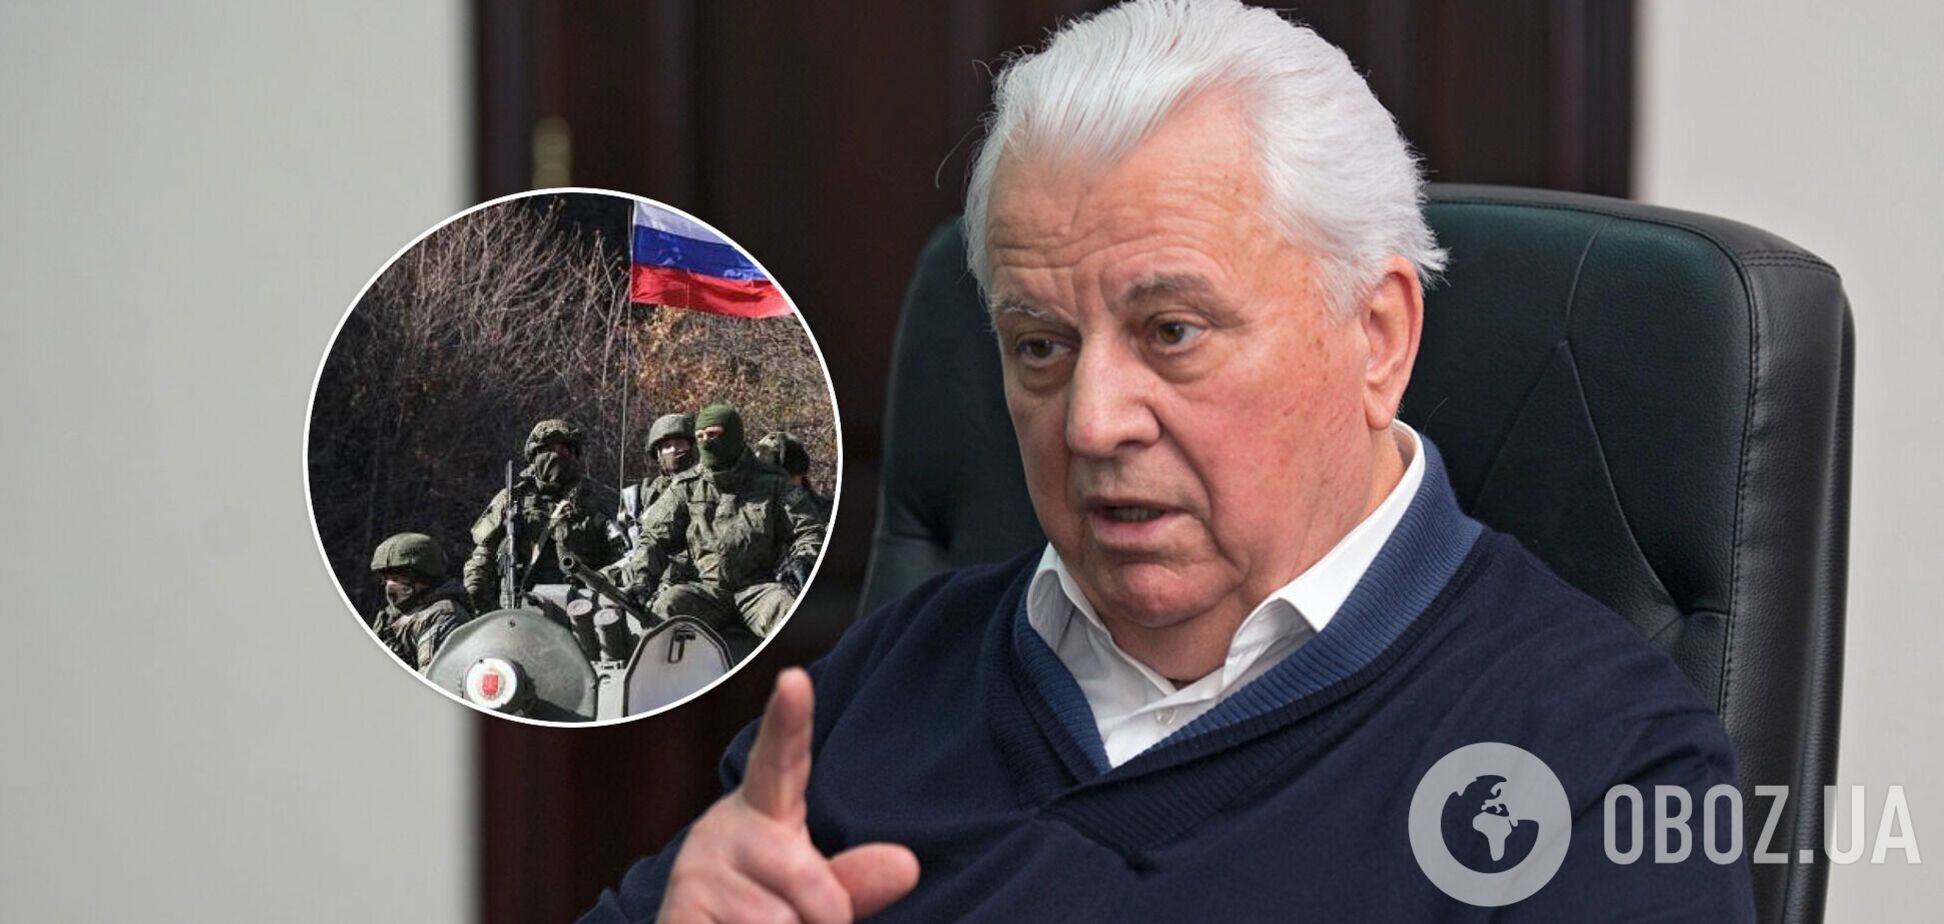 Кравчук: отвод войск РФ не меняет ее стратегической политики по Украине